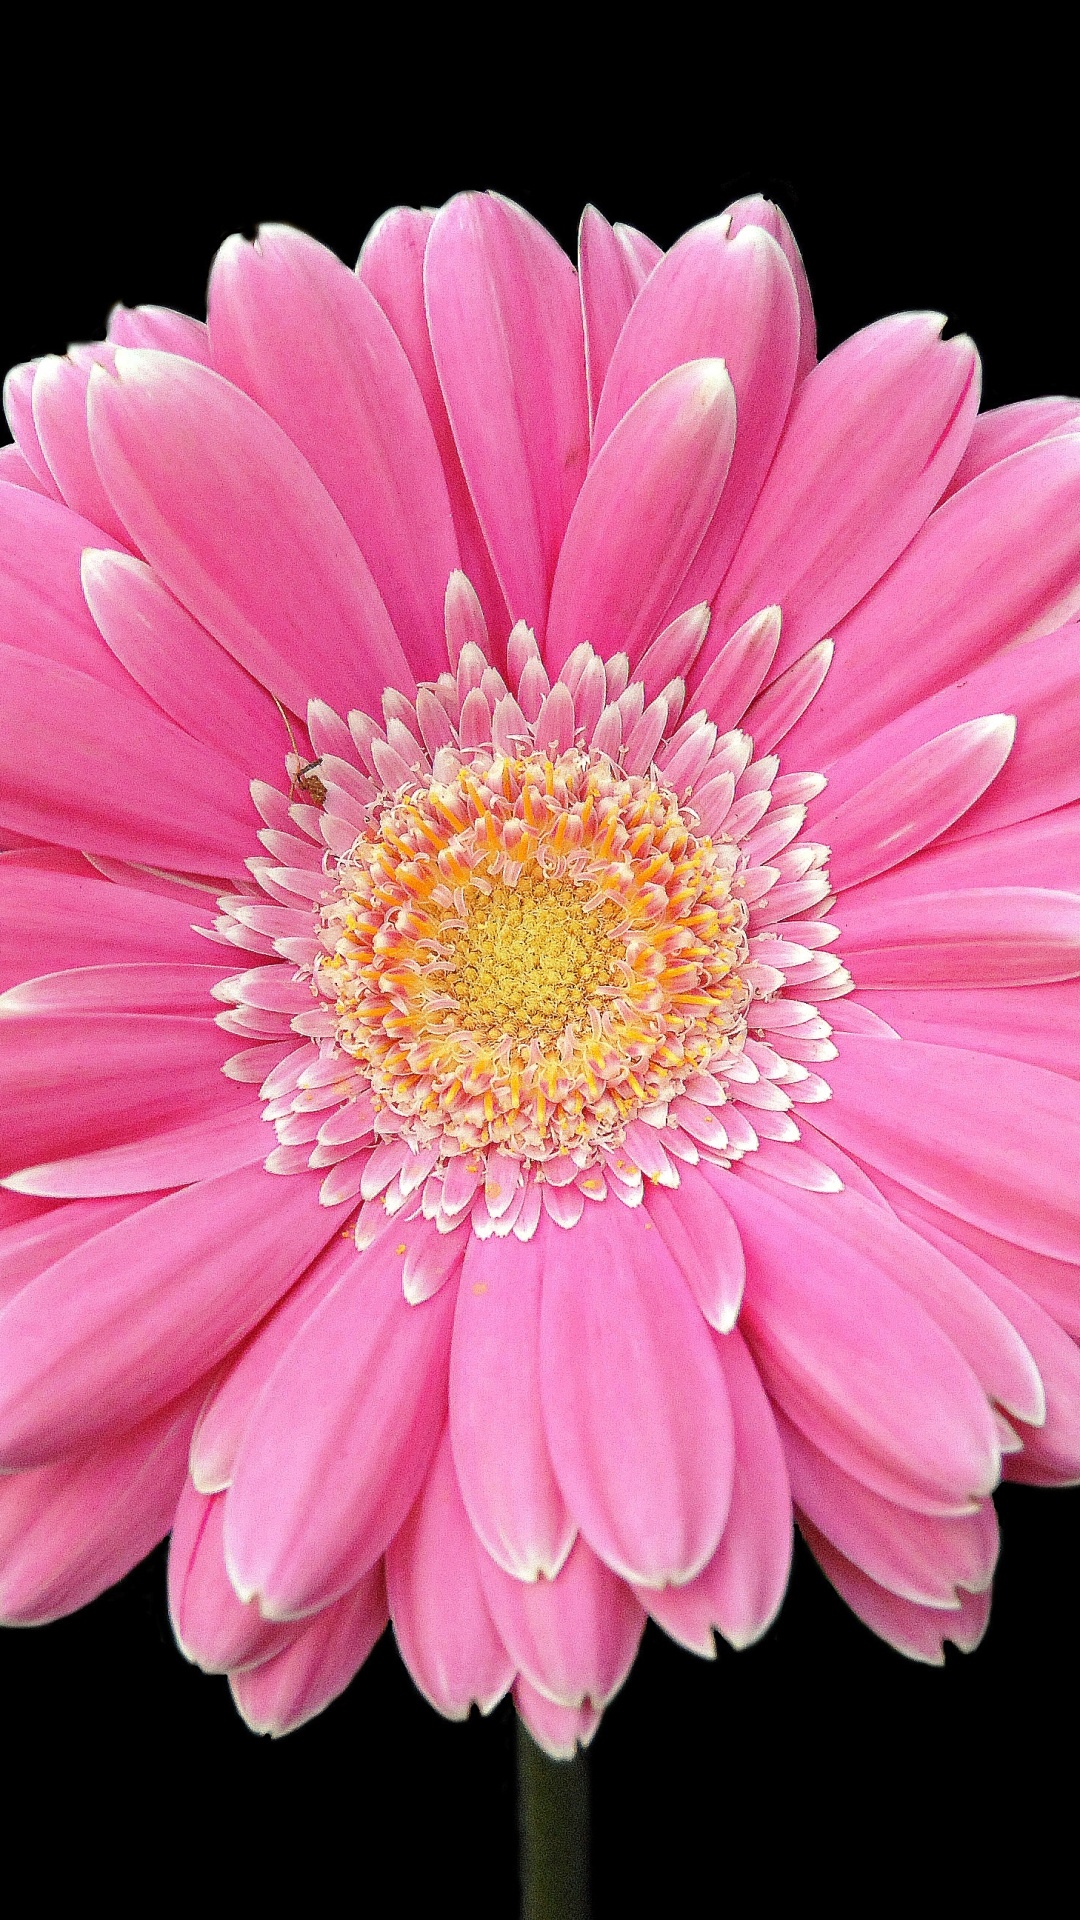 Gerbera Daisy: A flower that grows as an annual or perennial. 1080x1920 Full HD Wallpaper.